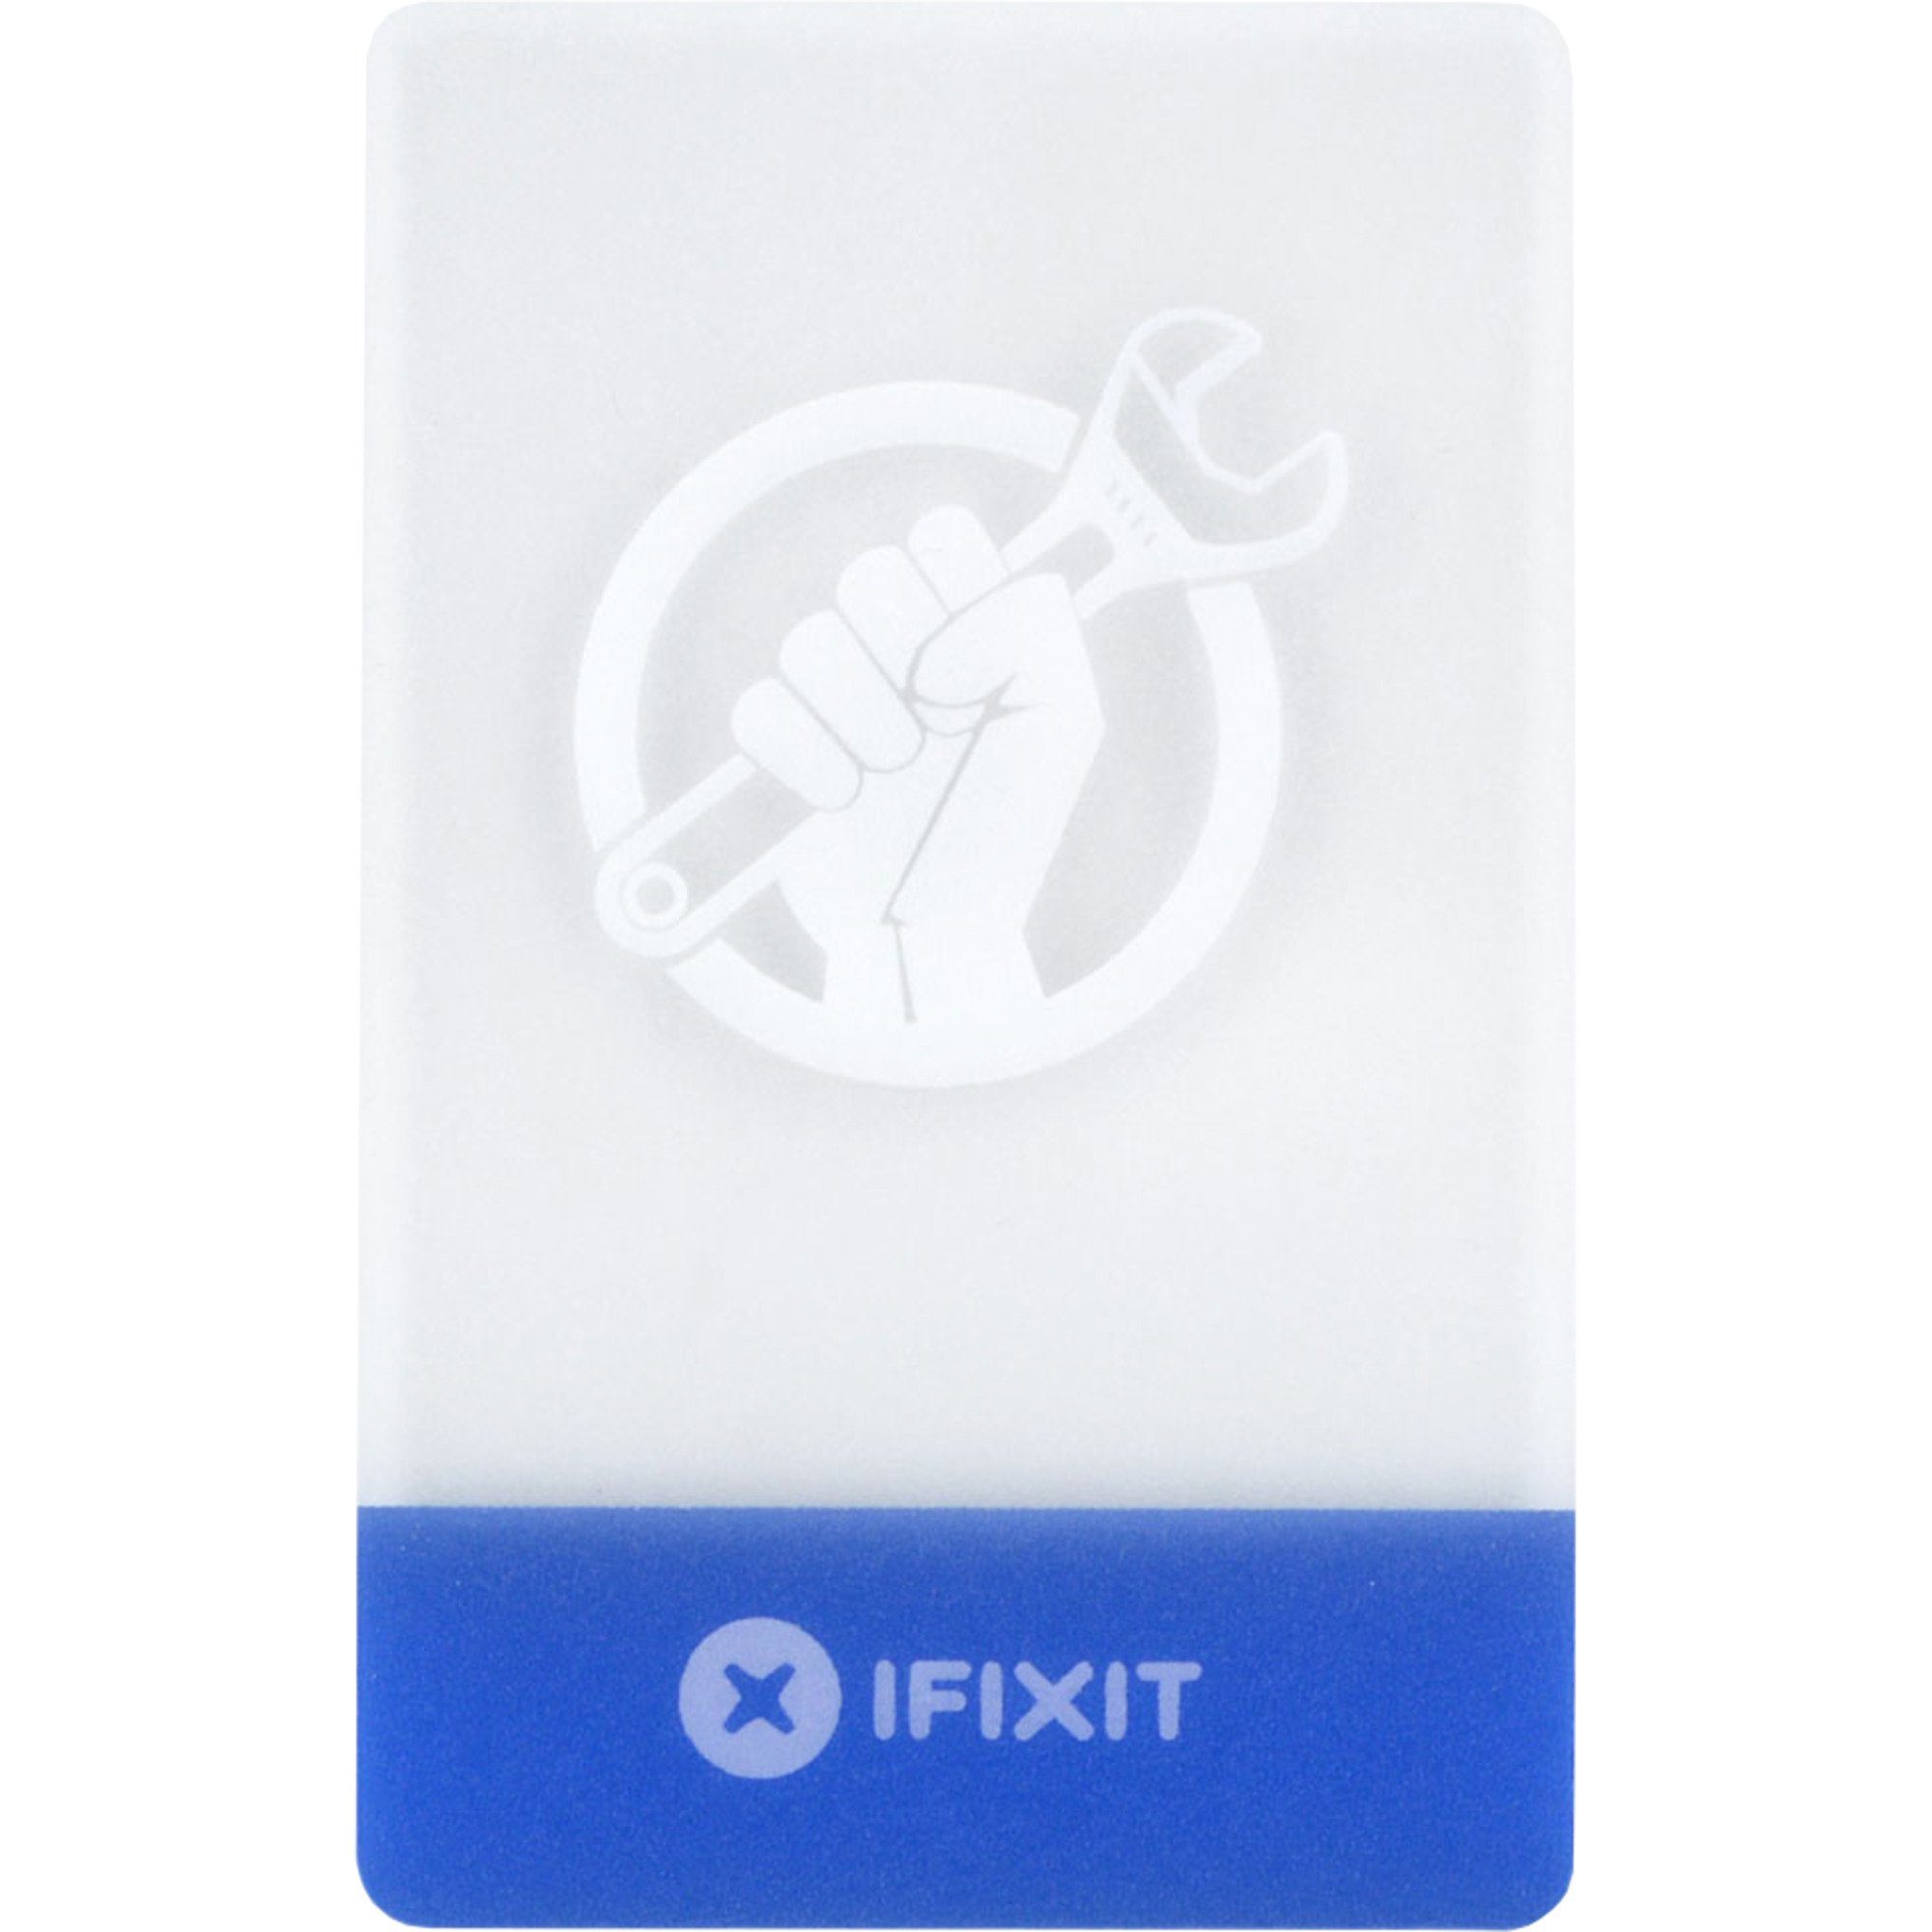 iFixit Schraubendreher Plastic Cards in Kreditkartengröße